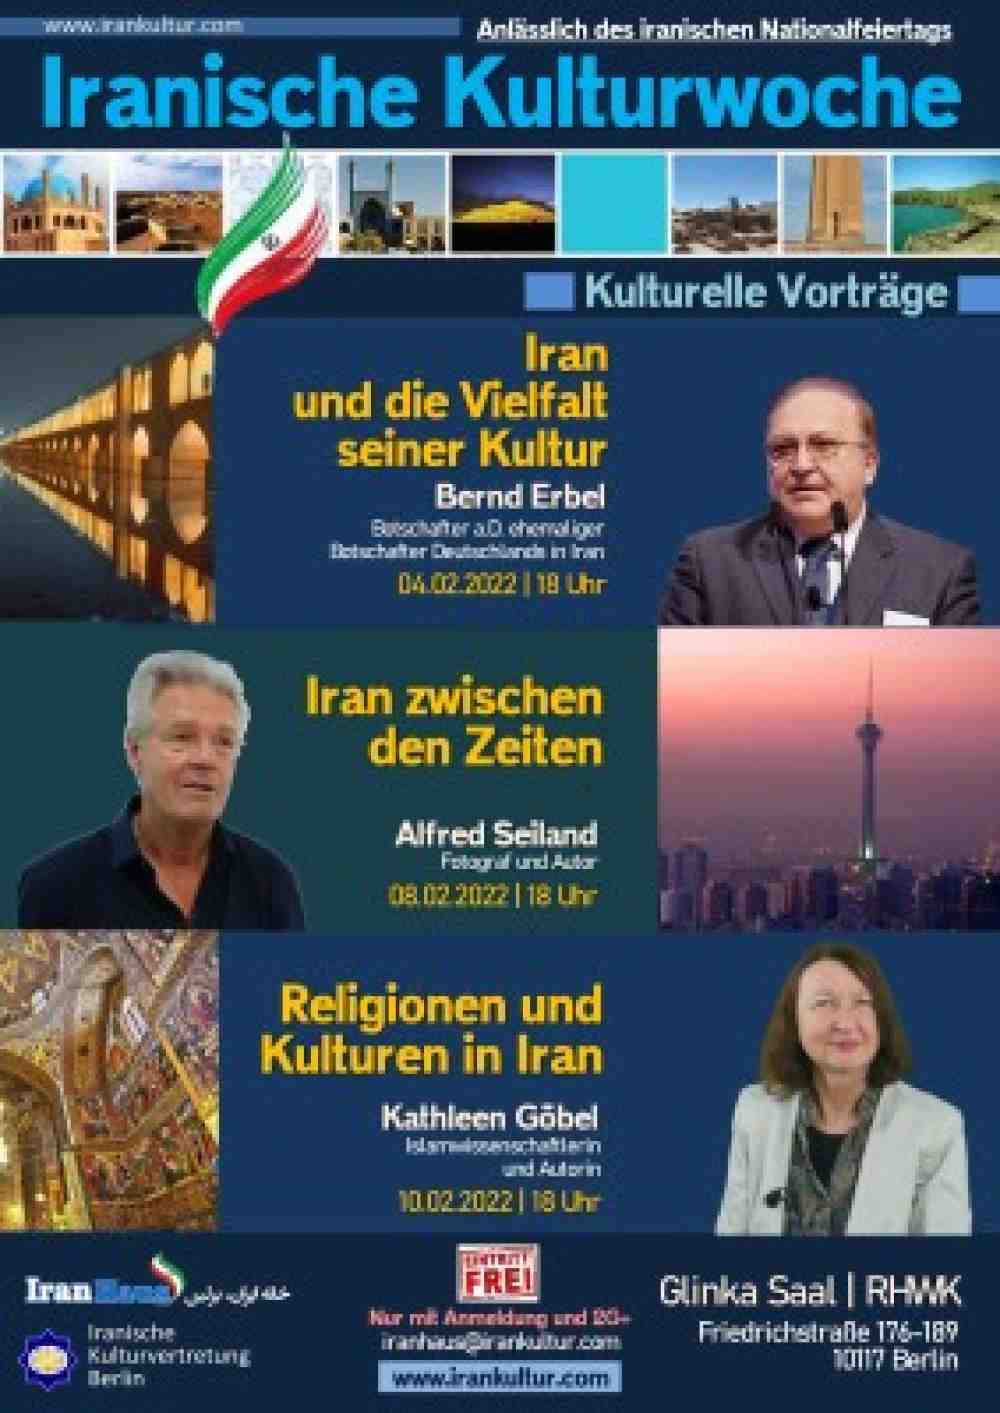 Iranische Kulturwoche in Berlin vom 4. bis zum 10. Februar 2022